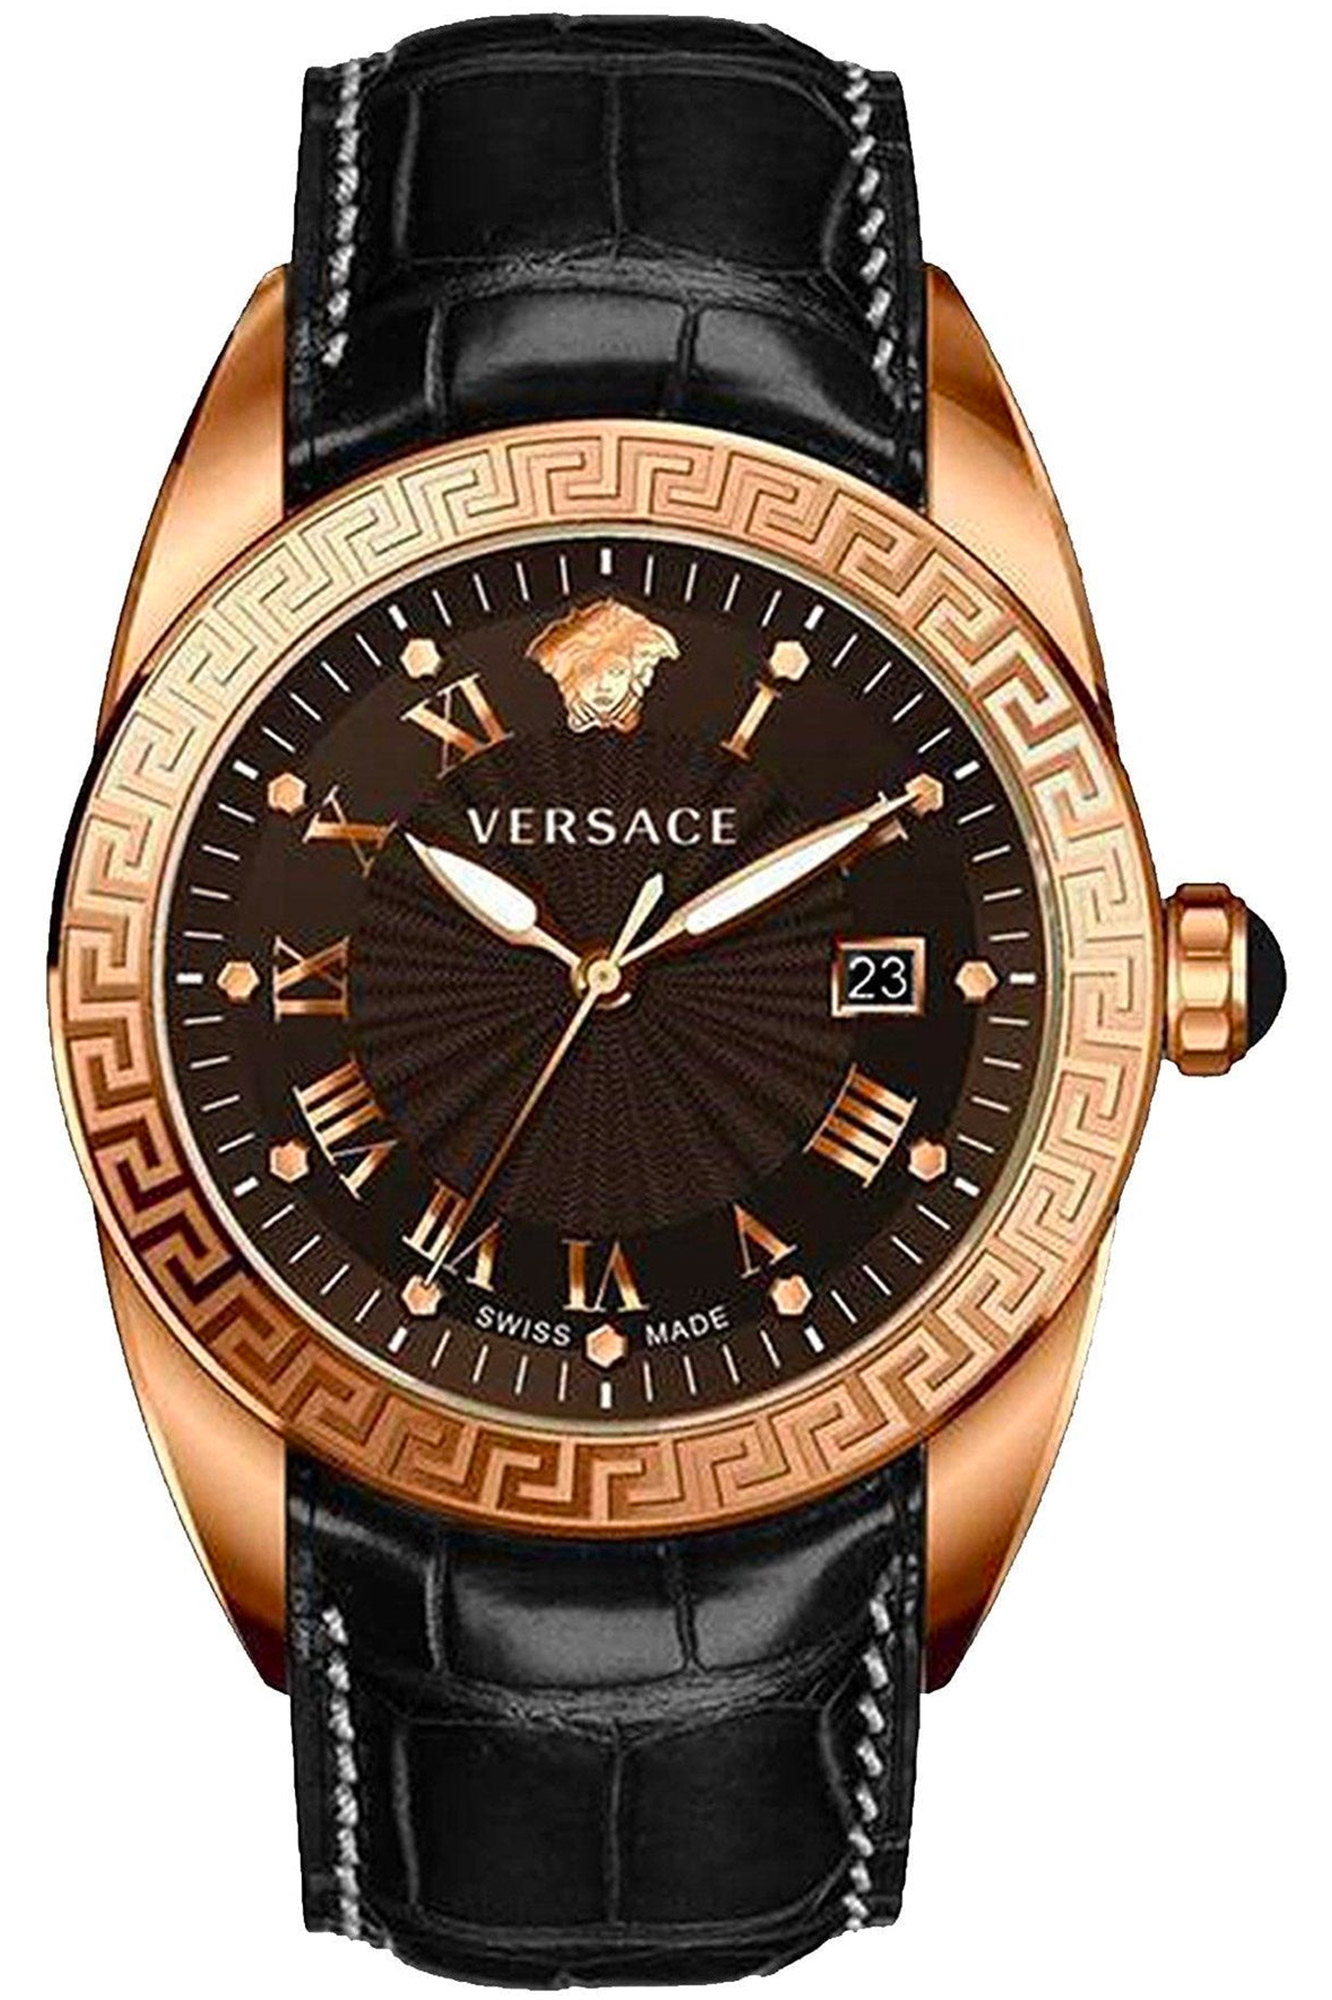 Watch Versace vfe080013